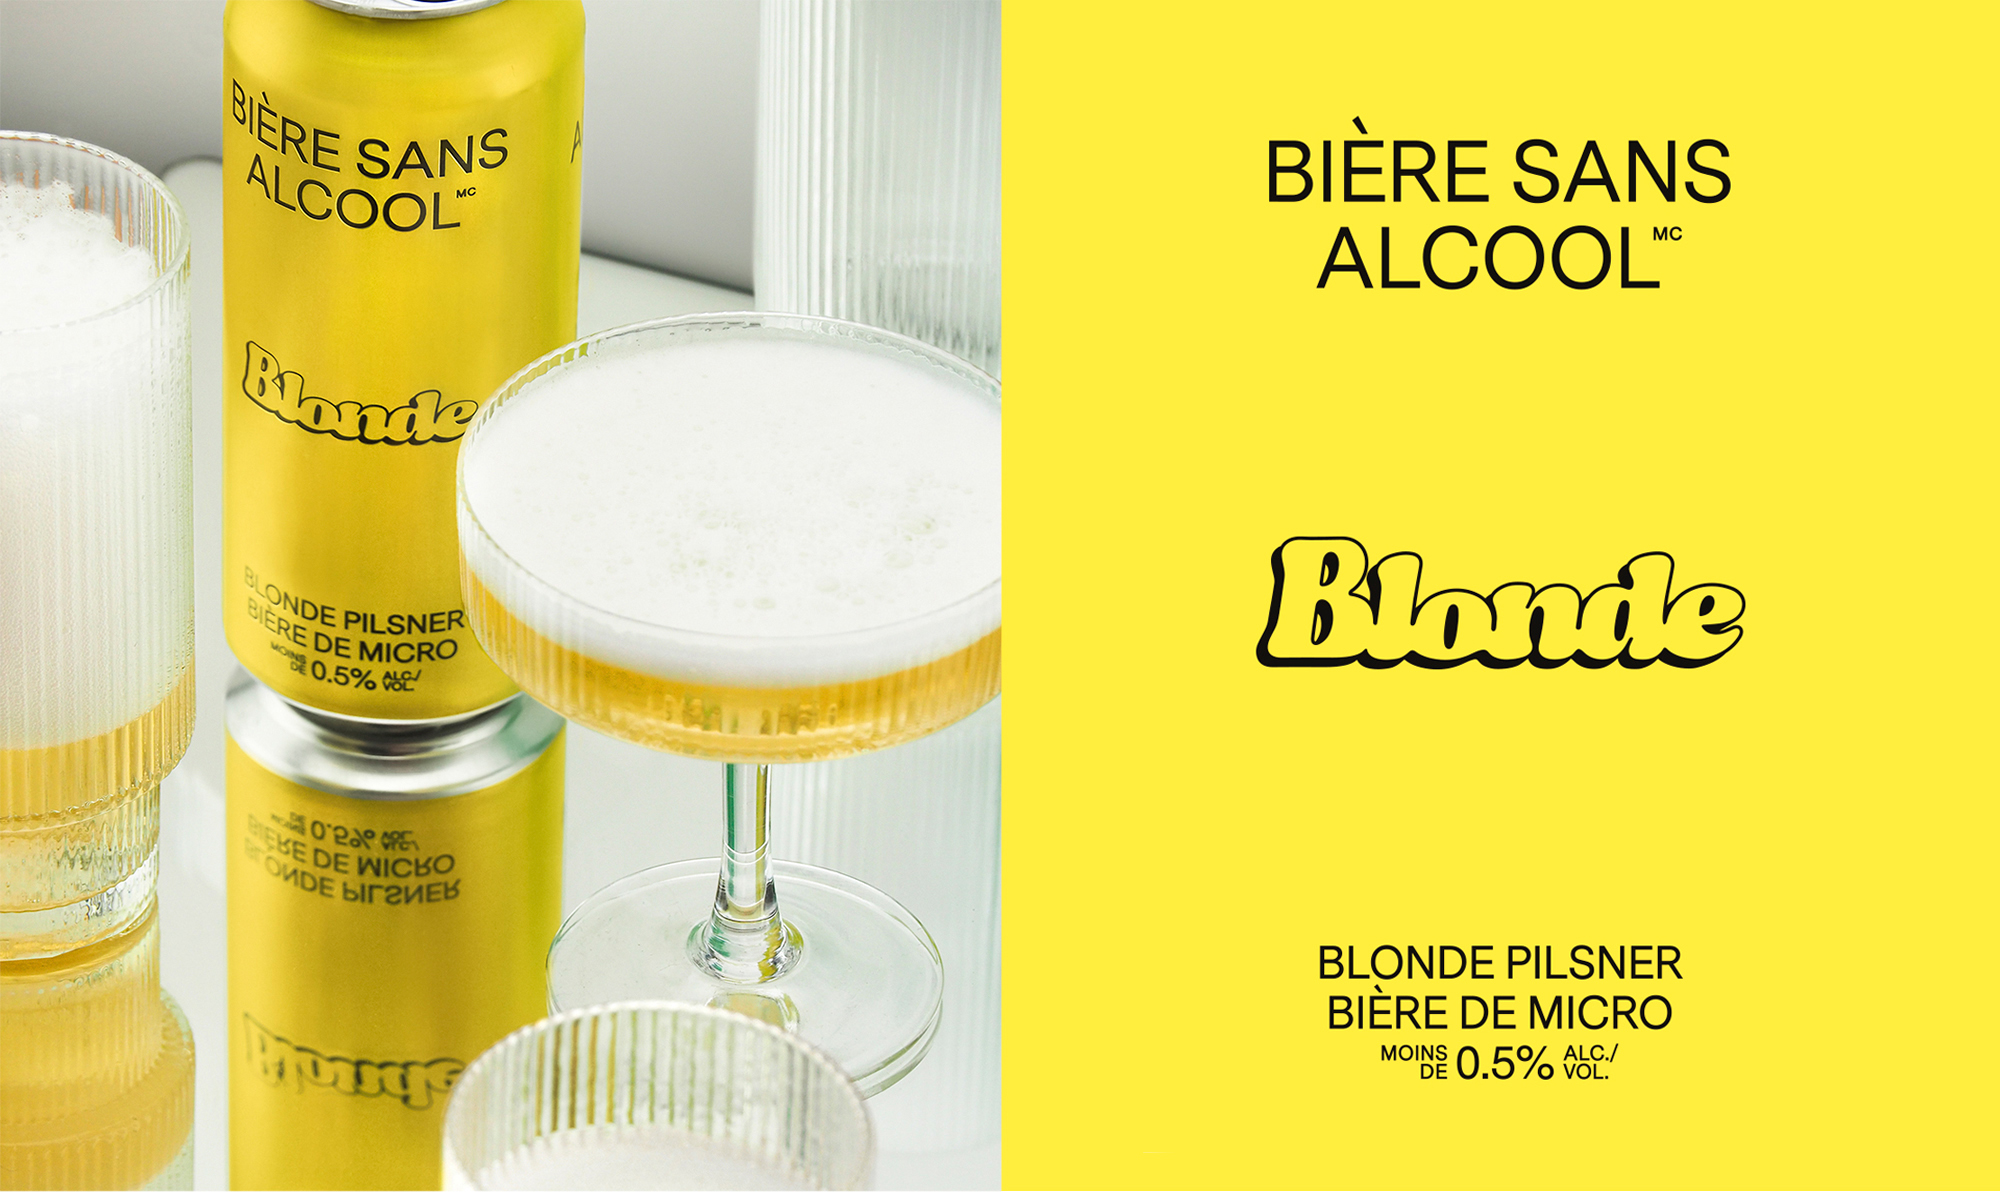 Bière Sans Alcool (BSA) (@biere_sans_alcool) • Instagram photos and videos